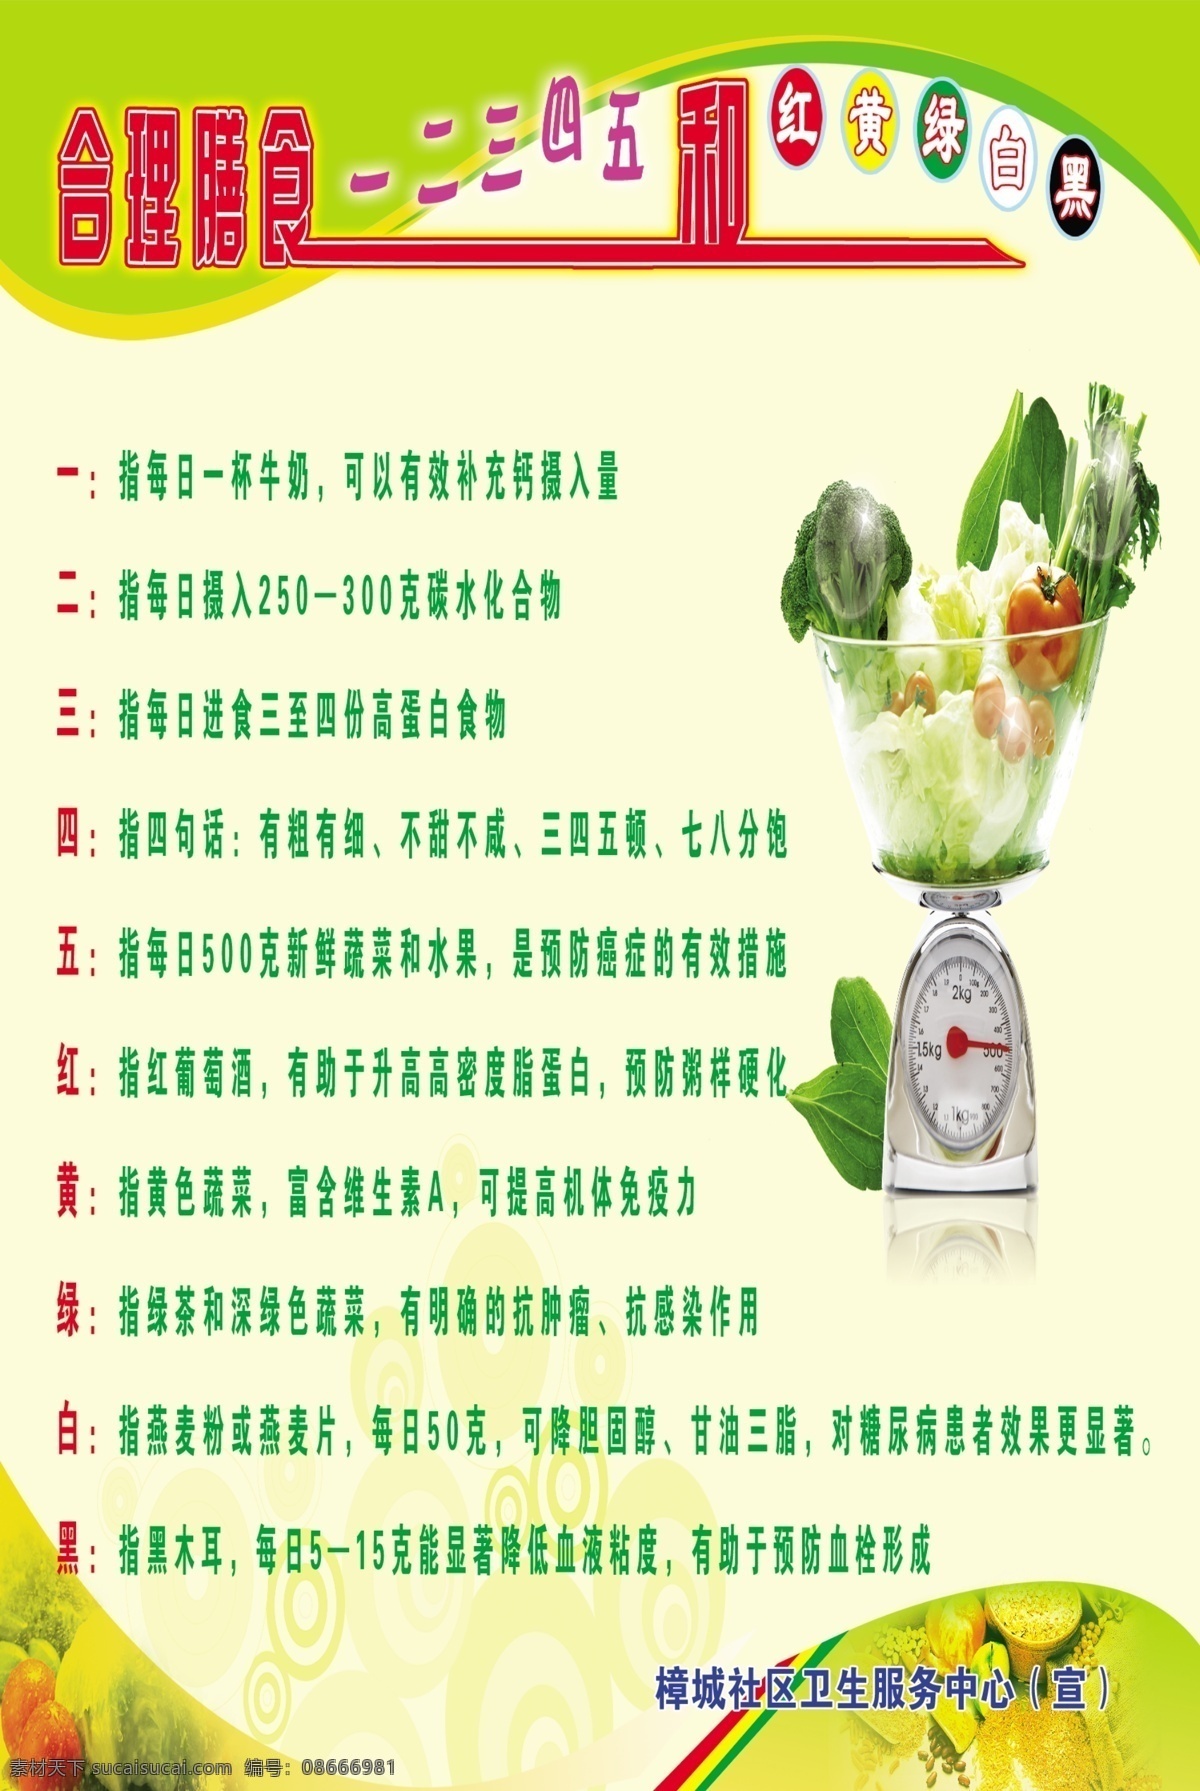 合理膳食广告 合理膳食 广告 海报 绿色 蔬菜